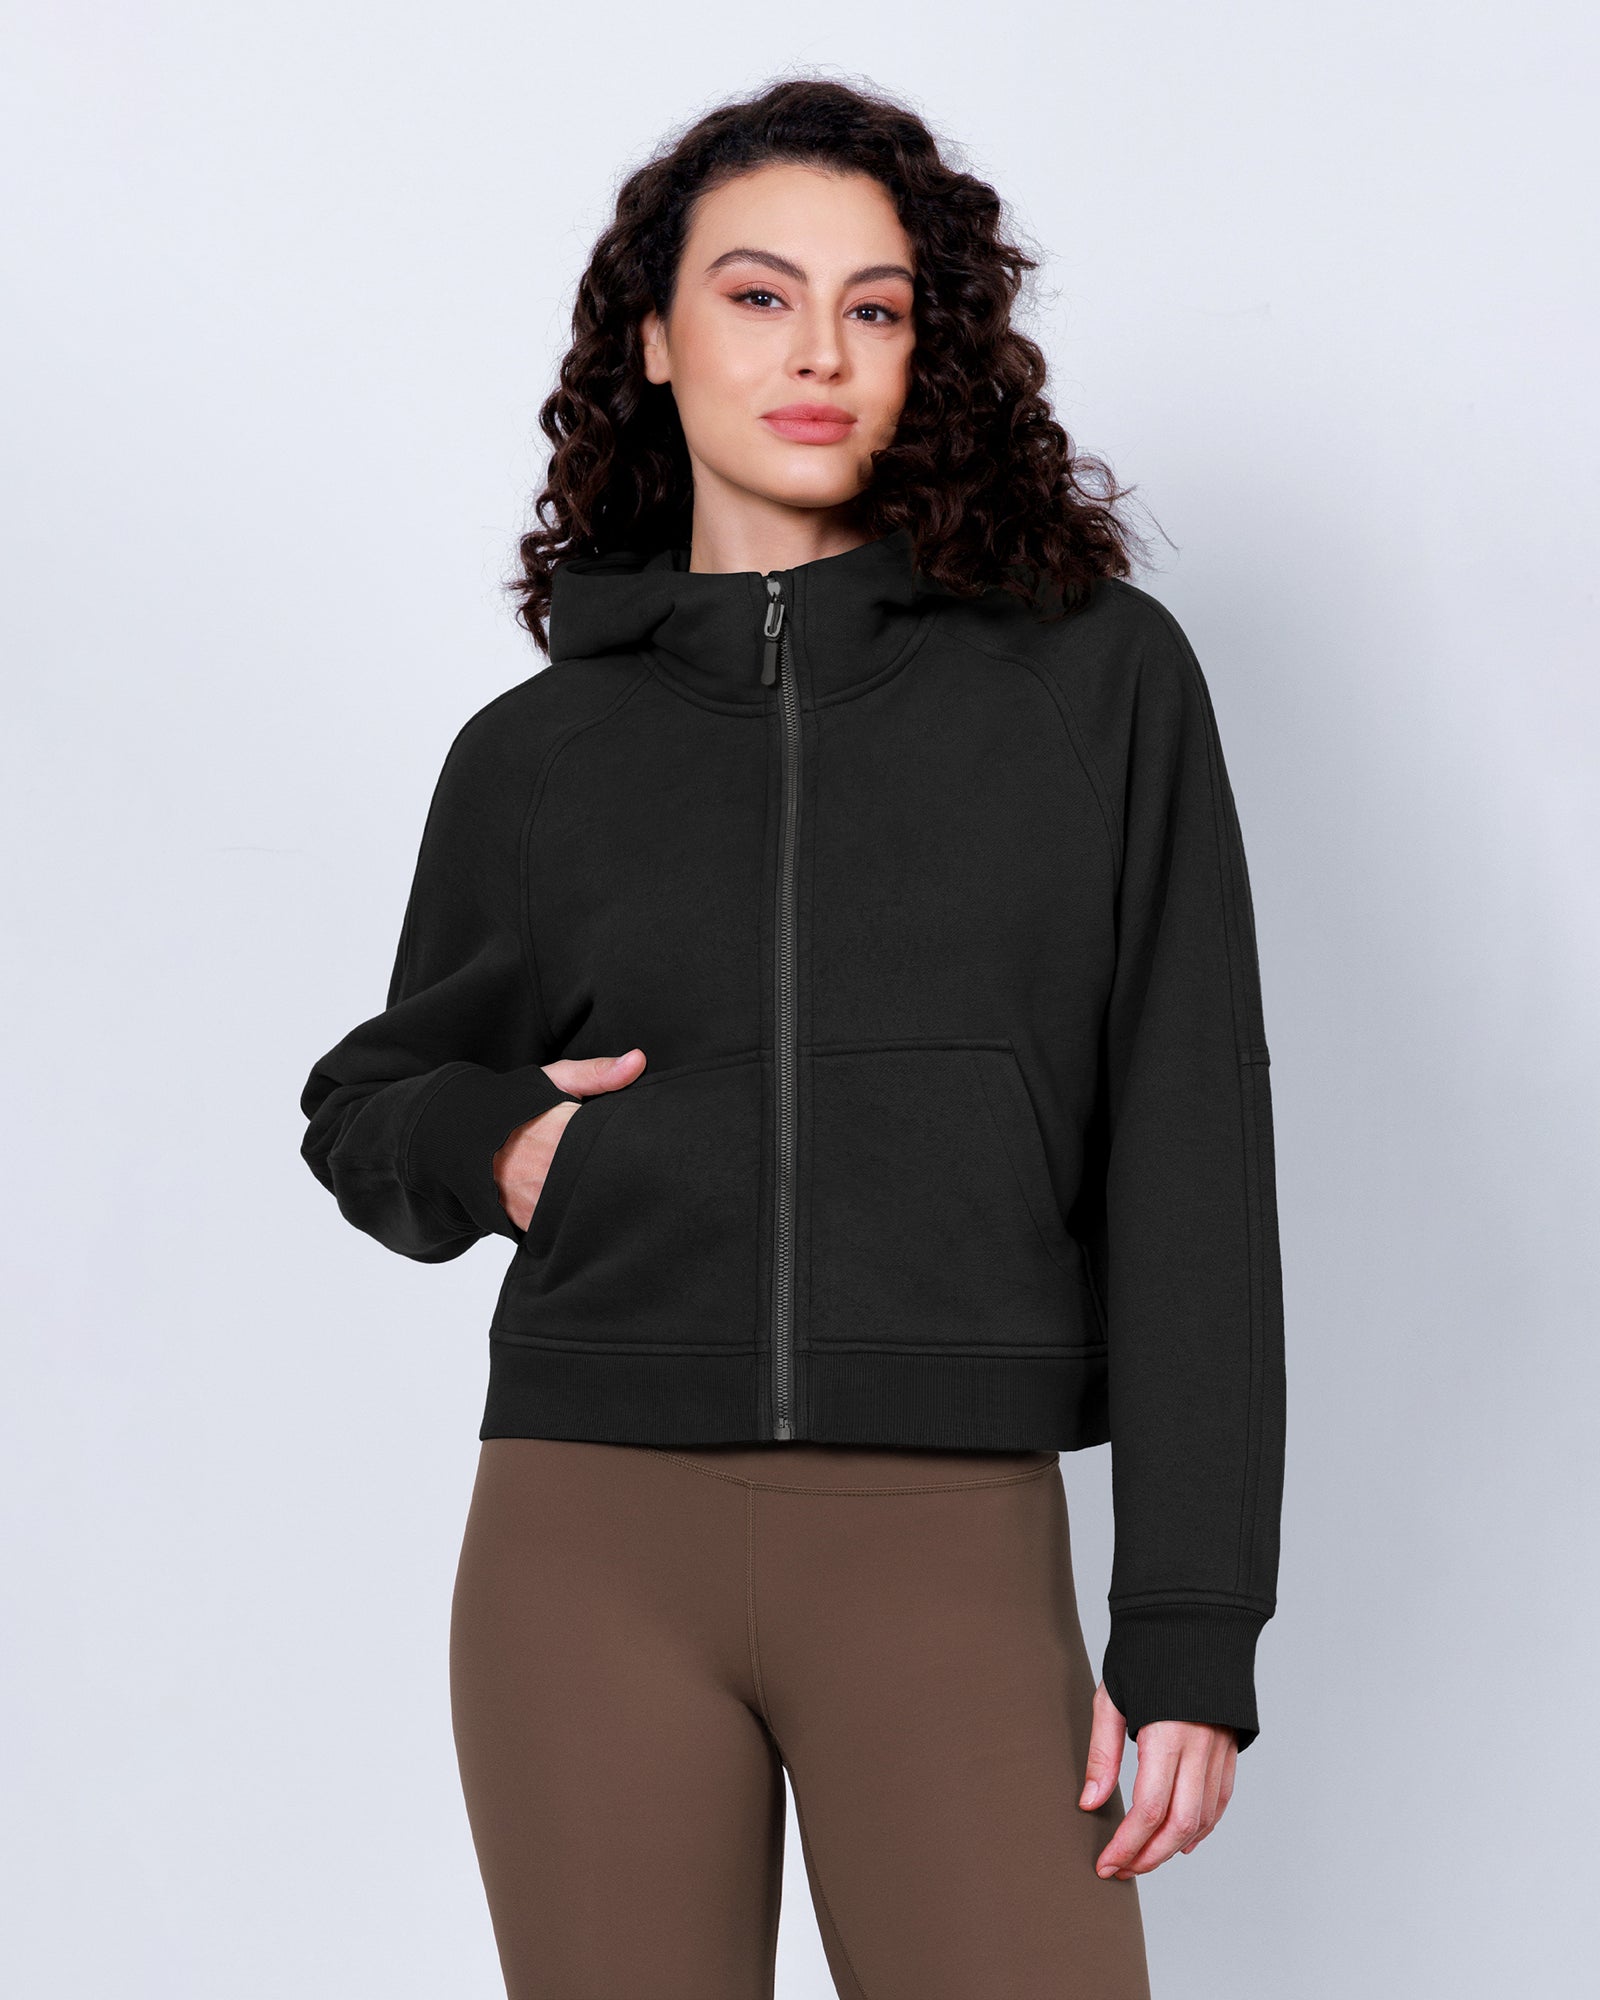 Women's Full Zipper Fleece Lined Cropped Hoodie Black - ododos